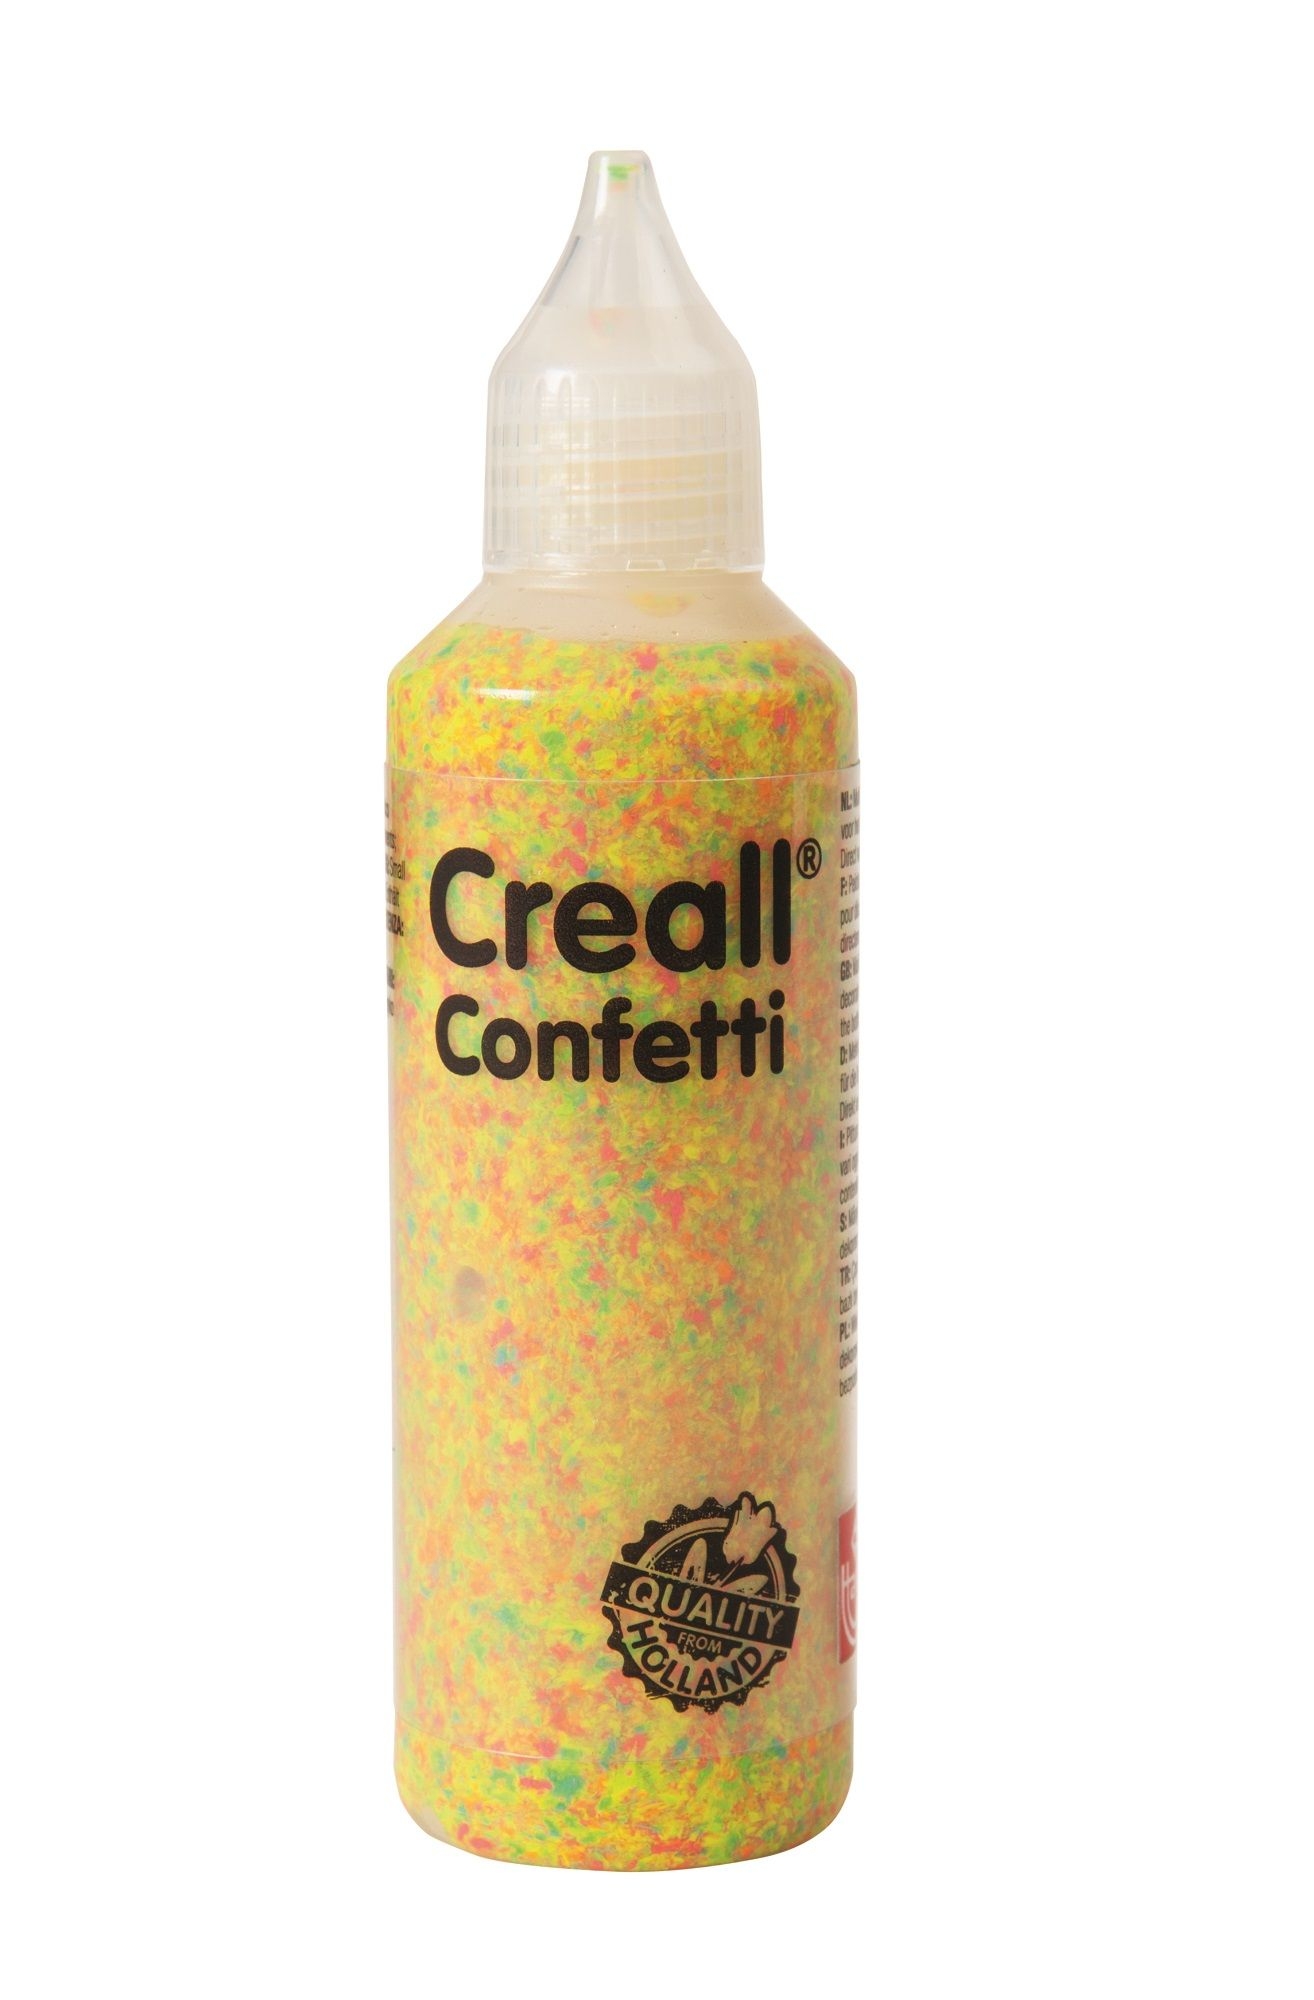 Creall Confetti